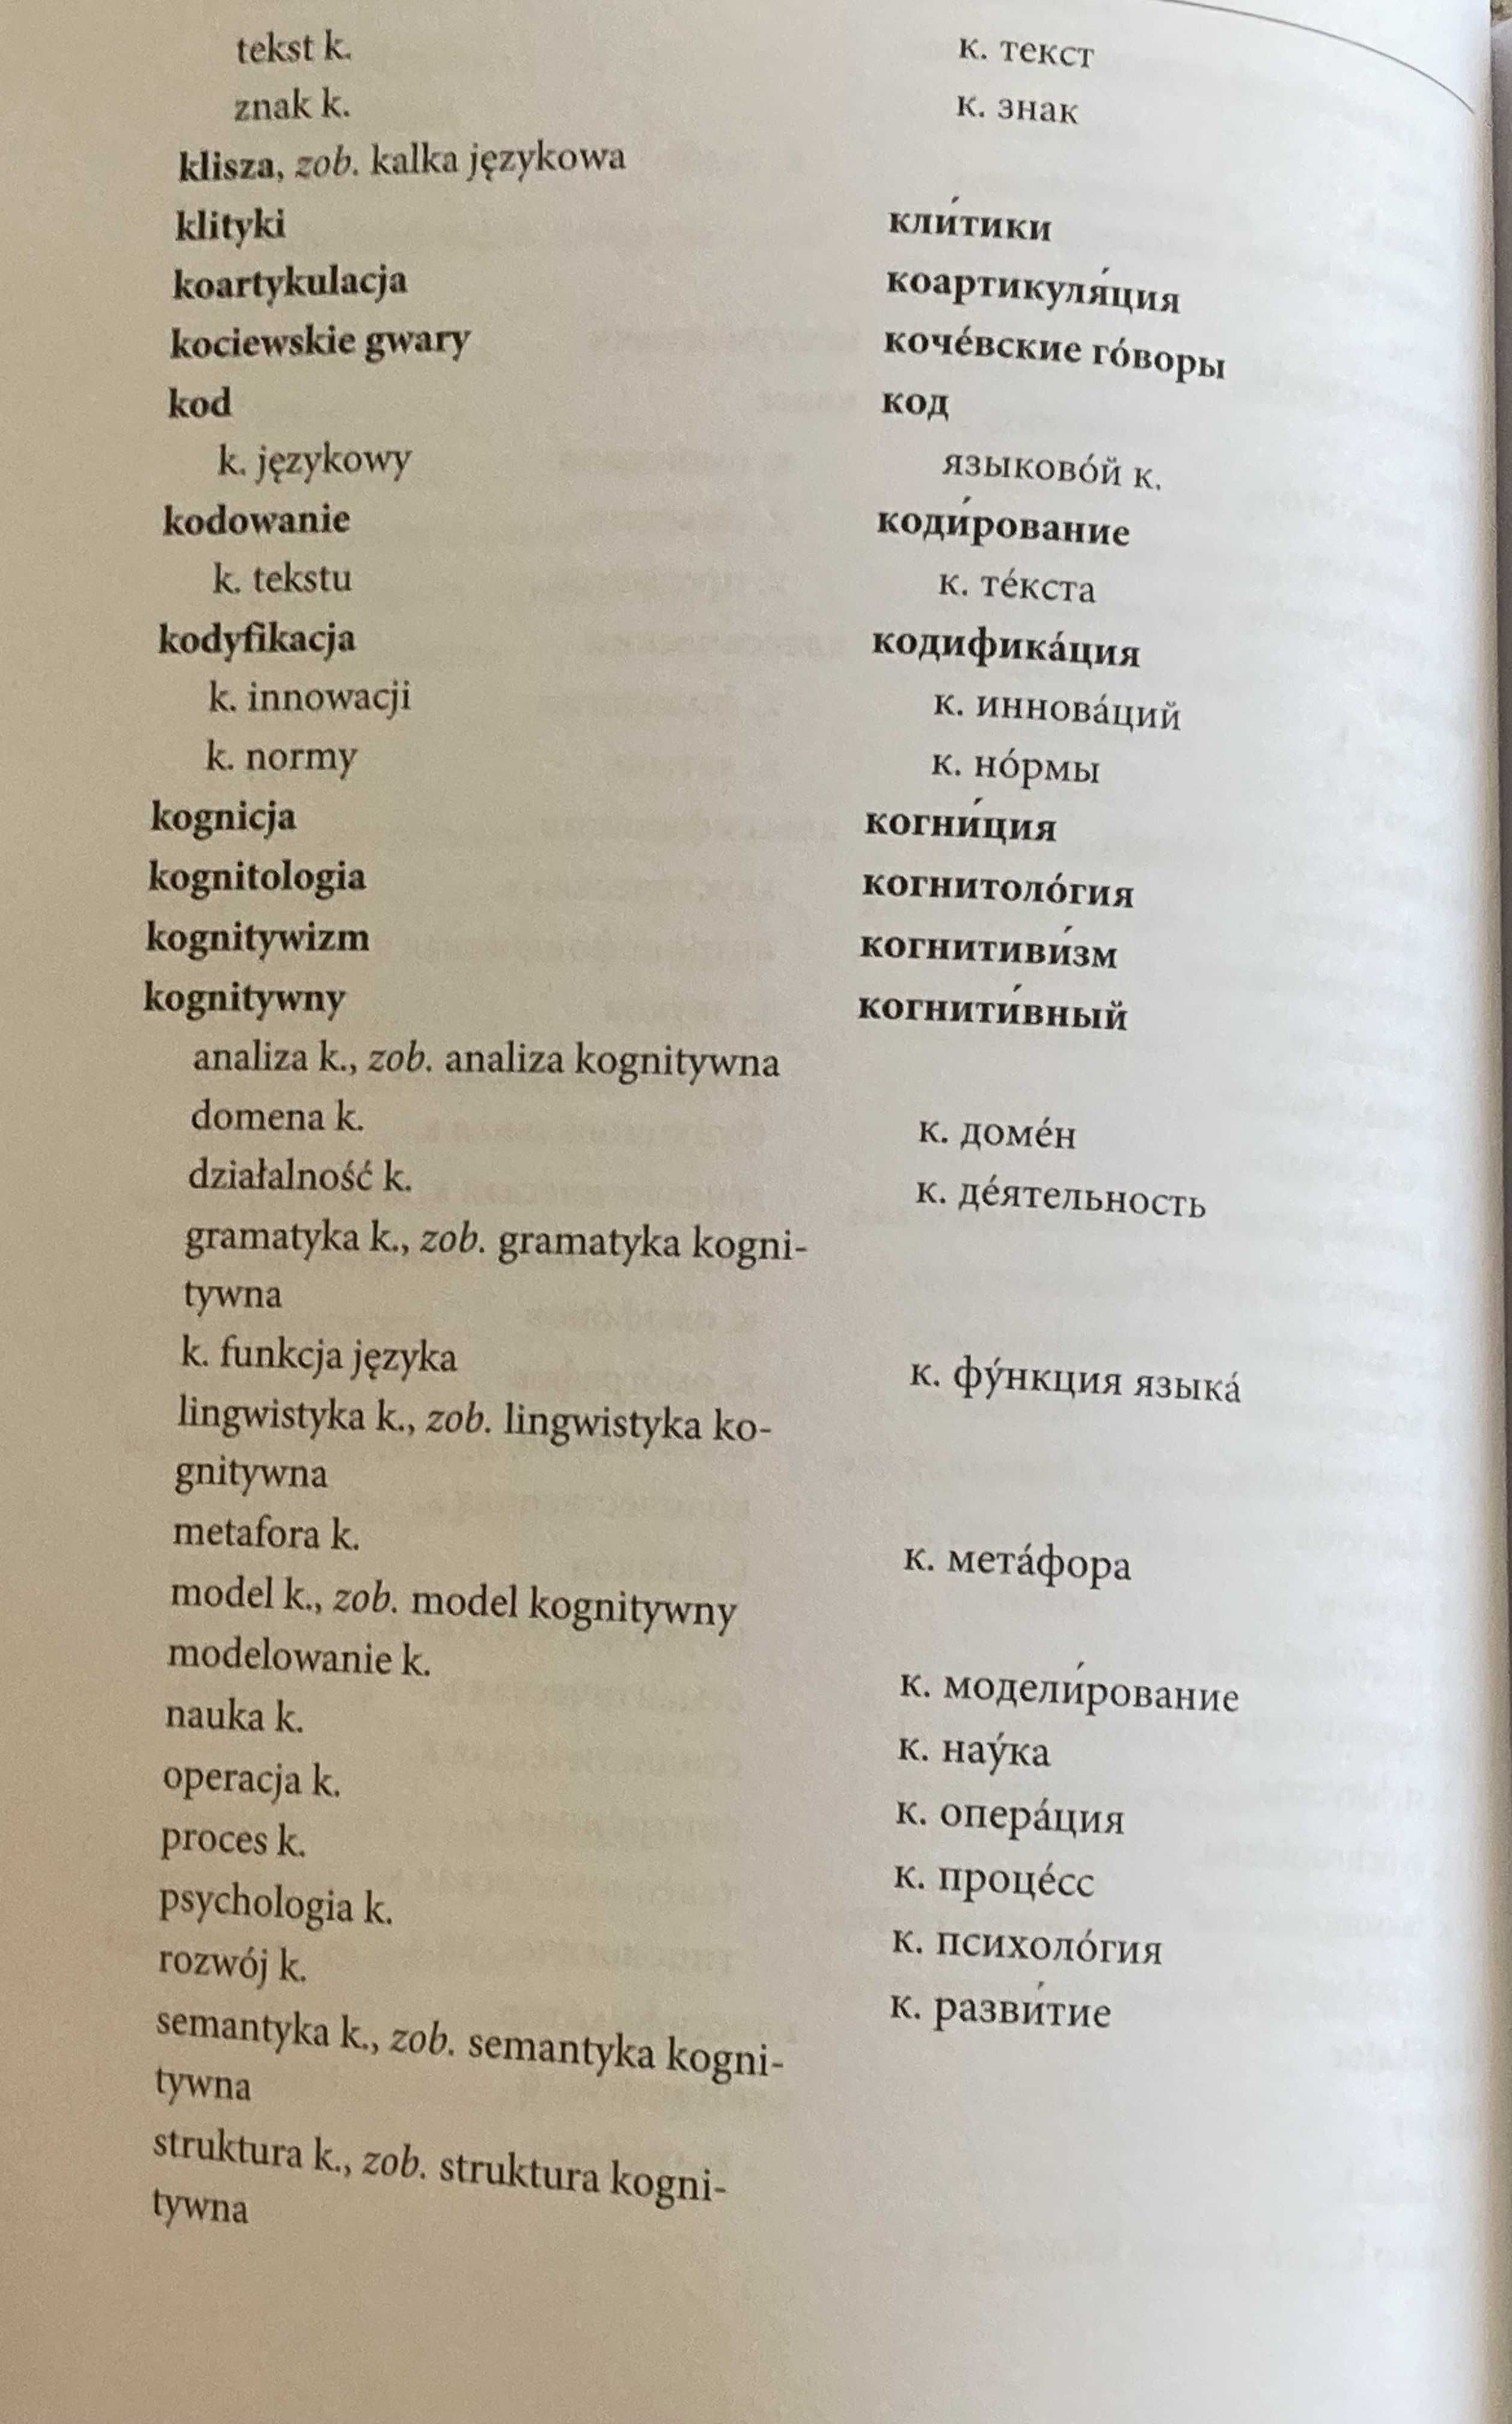 Miturska-Bojanowska, Pol.-ros. słownik terminów lingwistycznych...